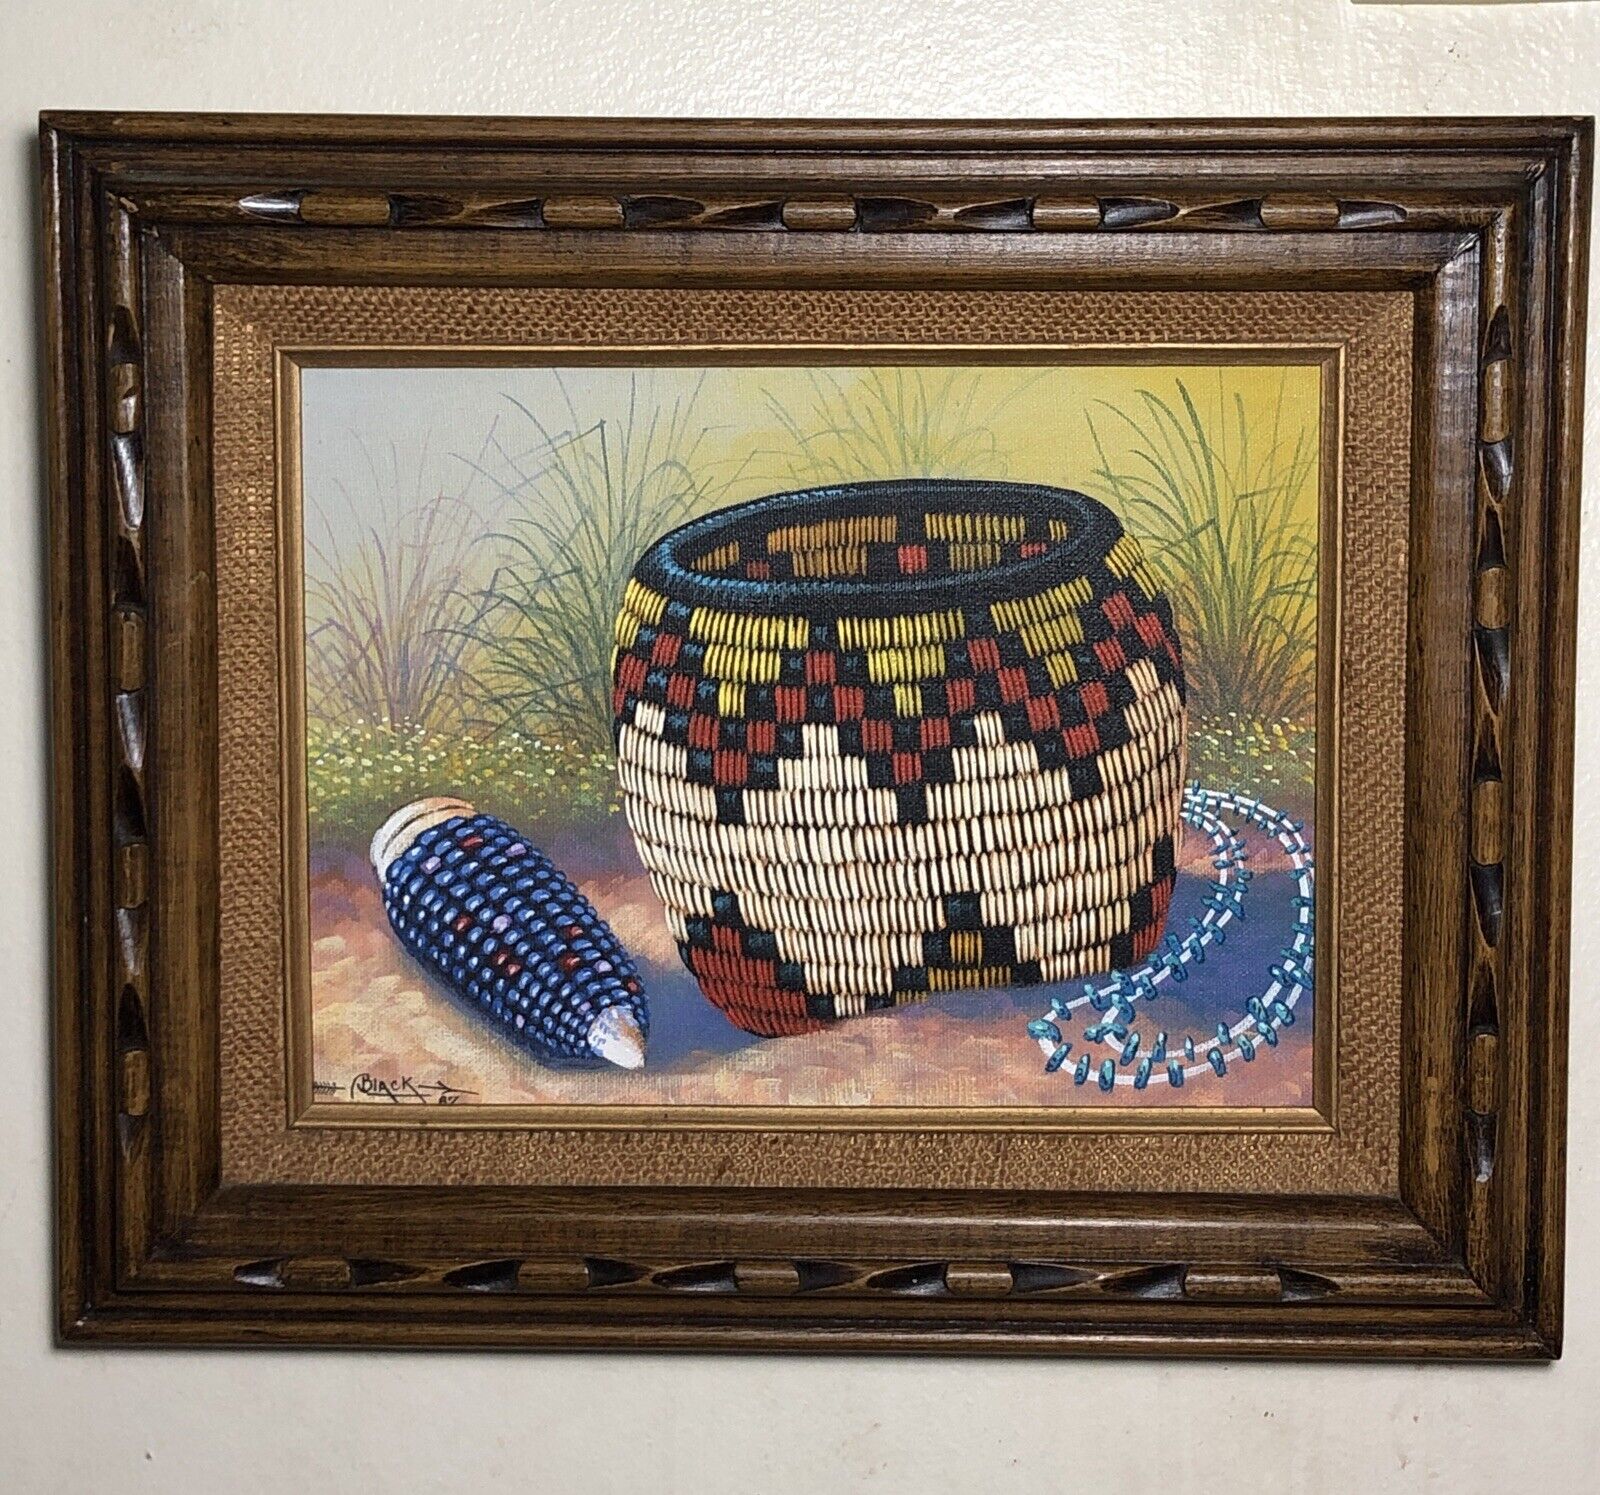 Hopi-Basket-Native-American-Painting-Framed Signed Dated - Jackie Black 87